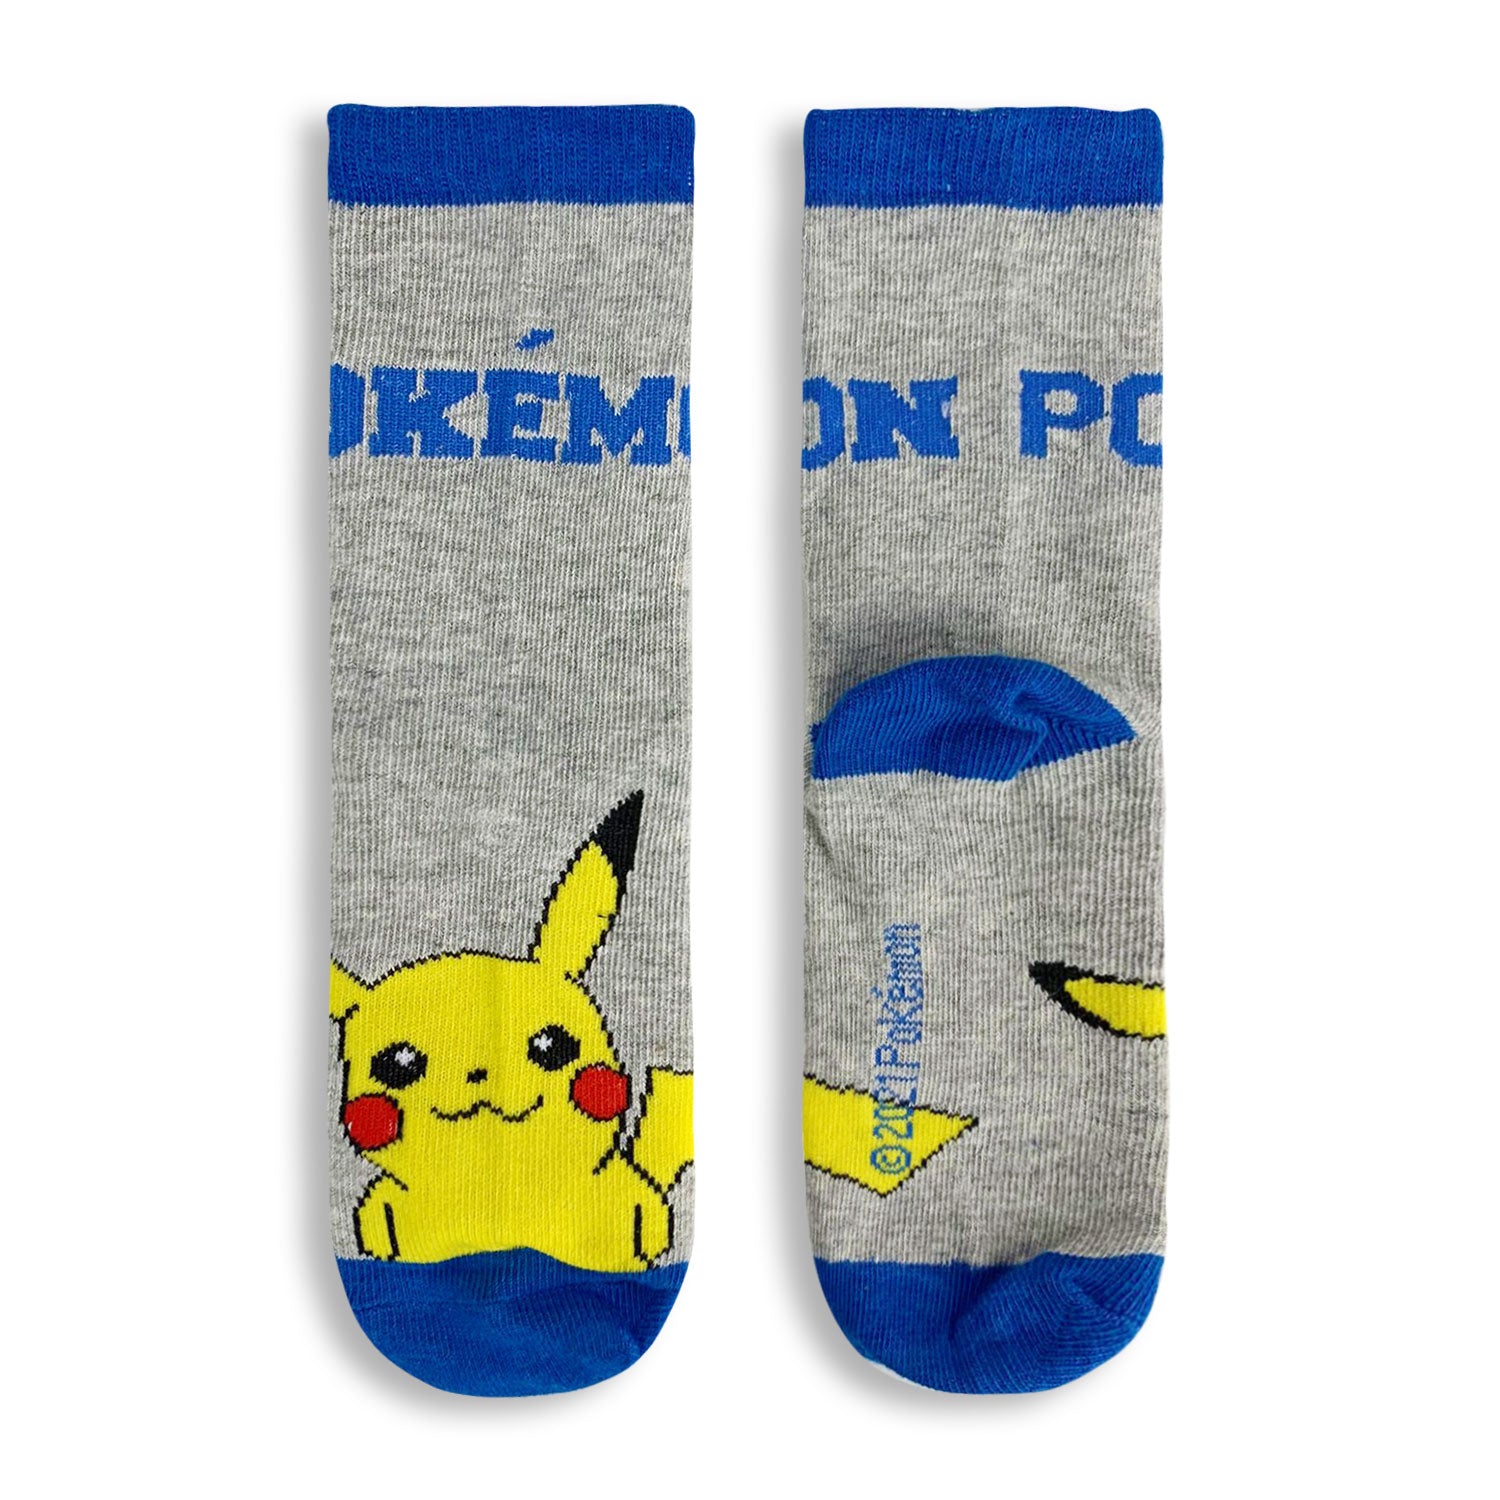 Calzini lunghi Pokemon pikachu 3 paia per bambino in filato cotone stampati 4833